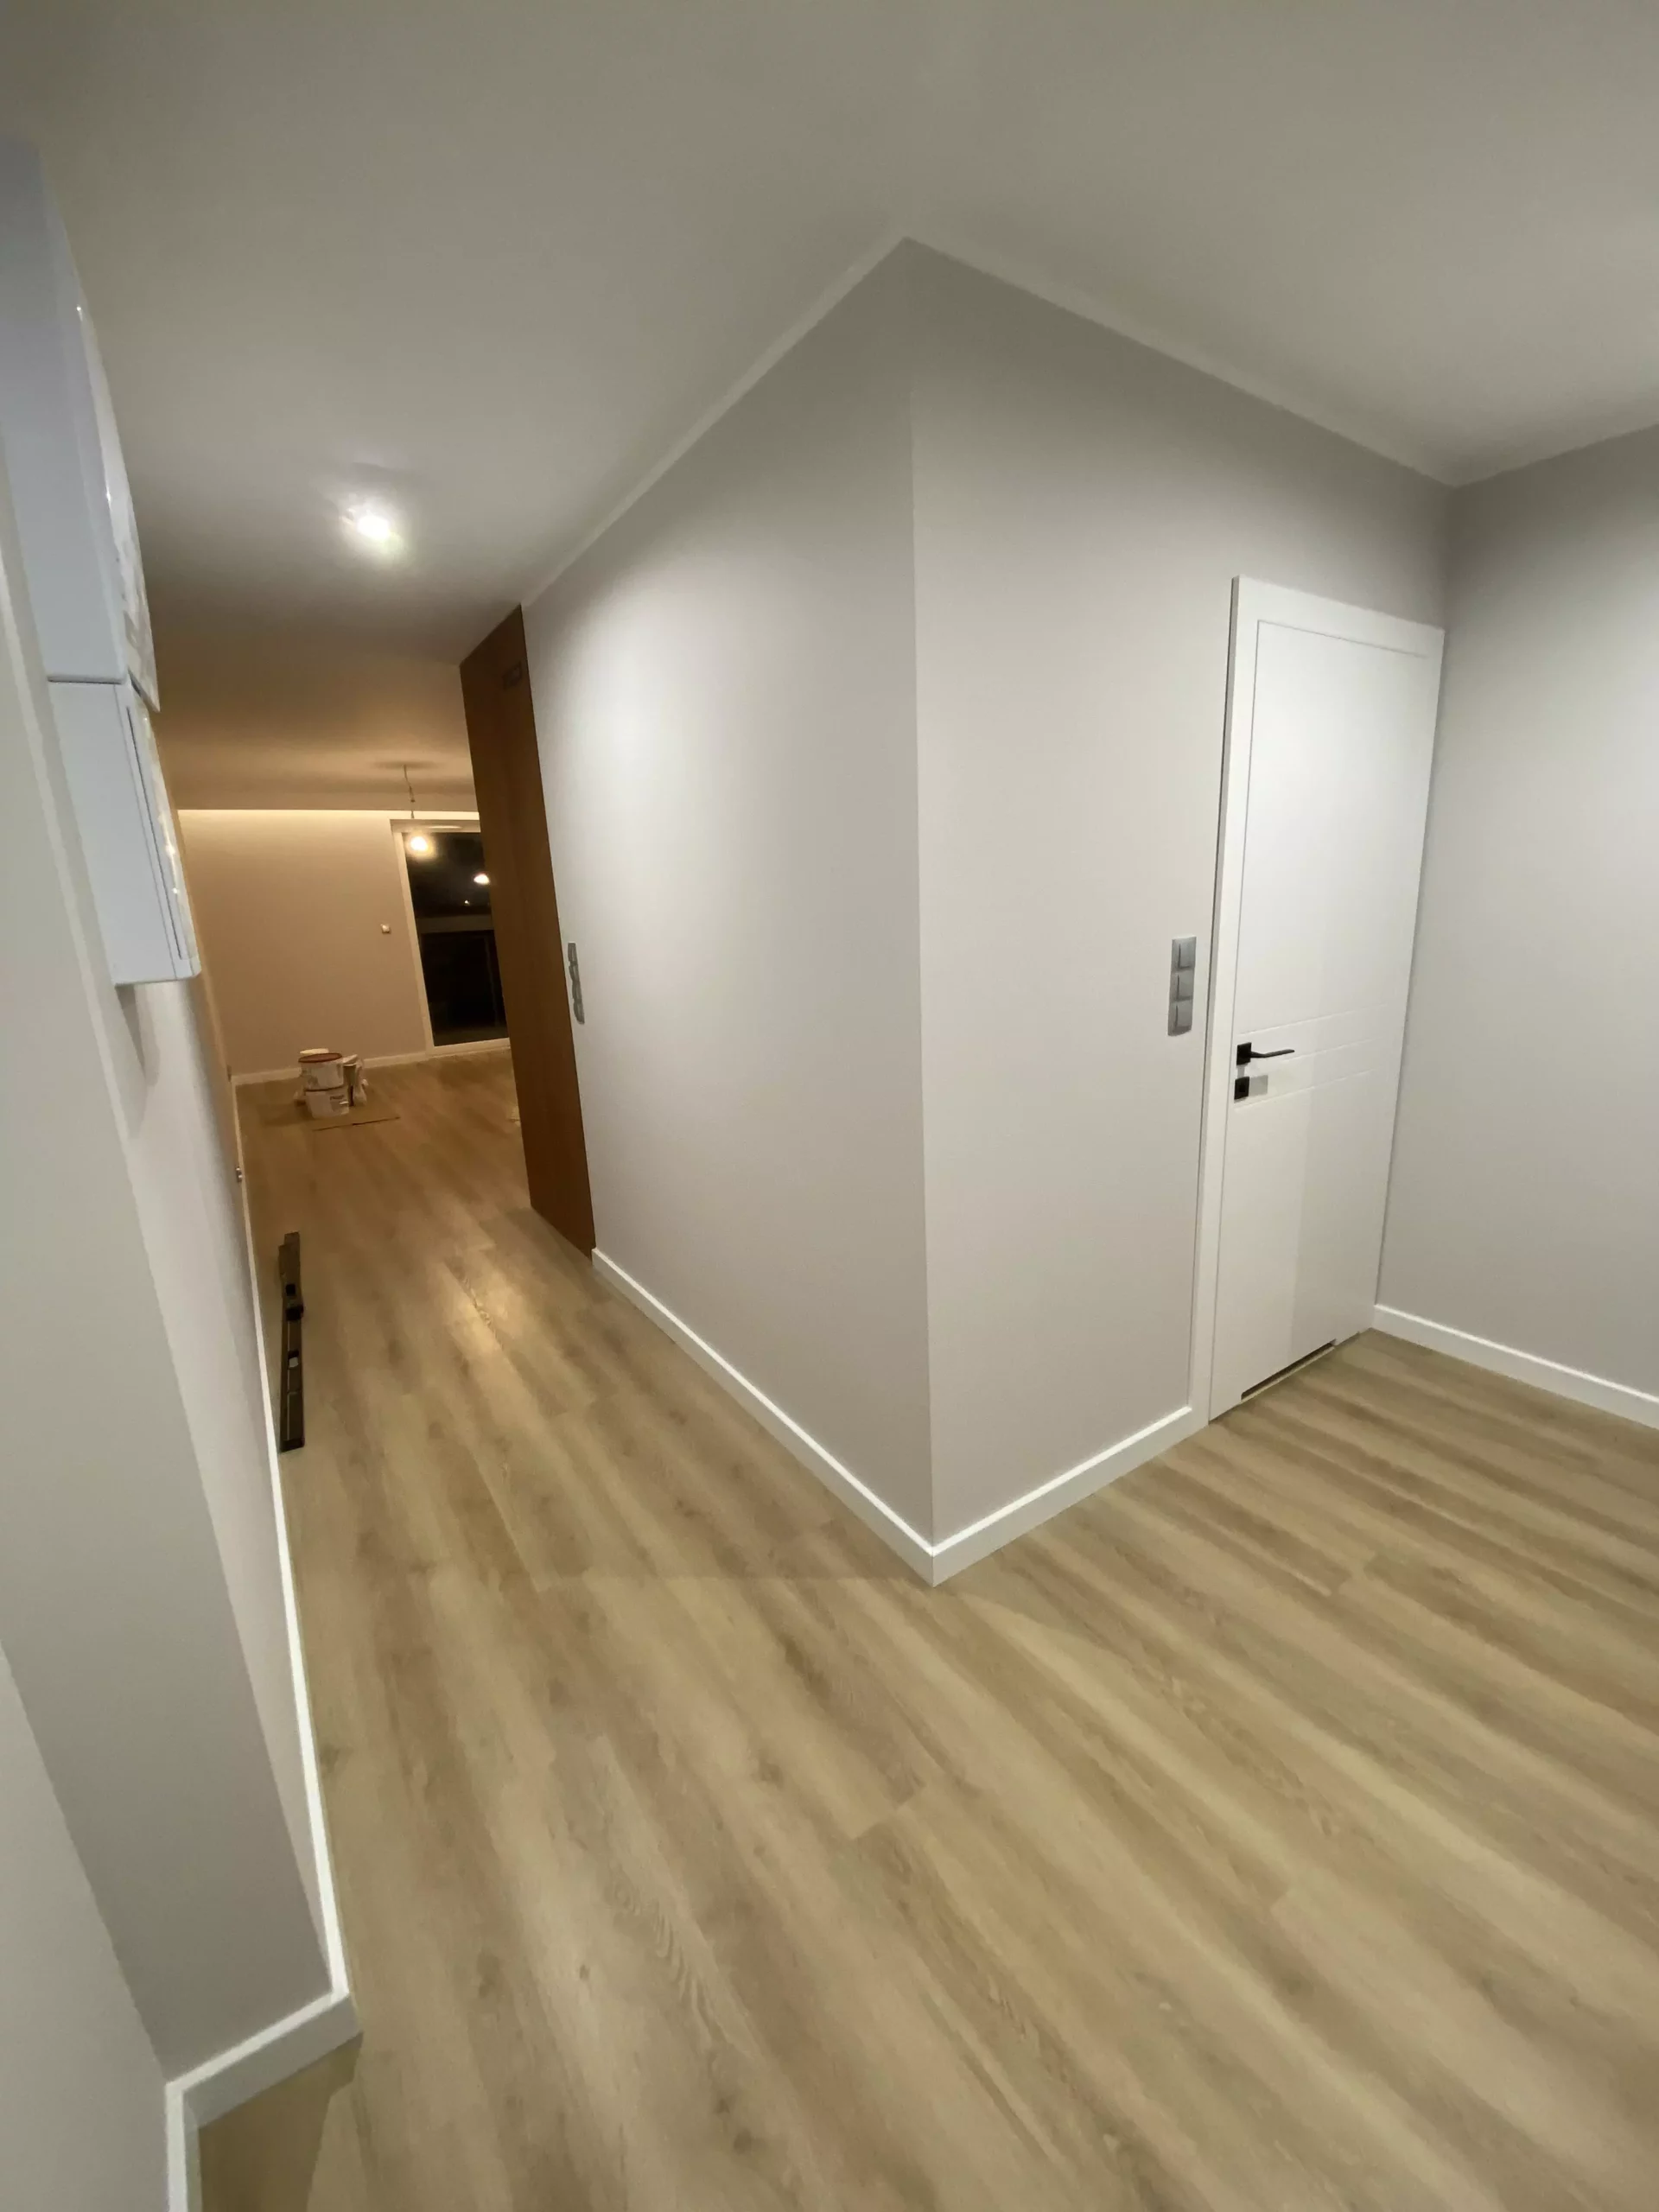 Drzwi i podłoga w mieszkaniu w Trójmieście